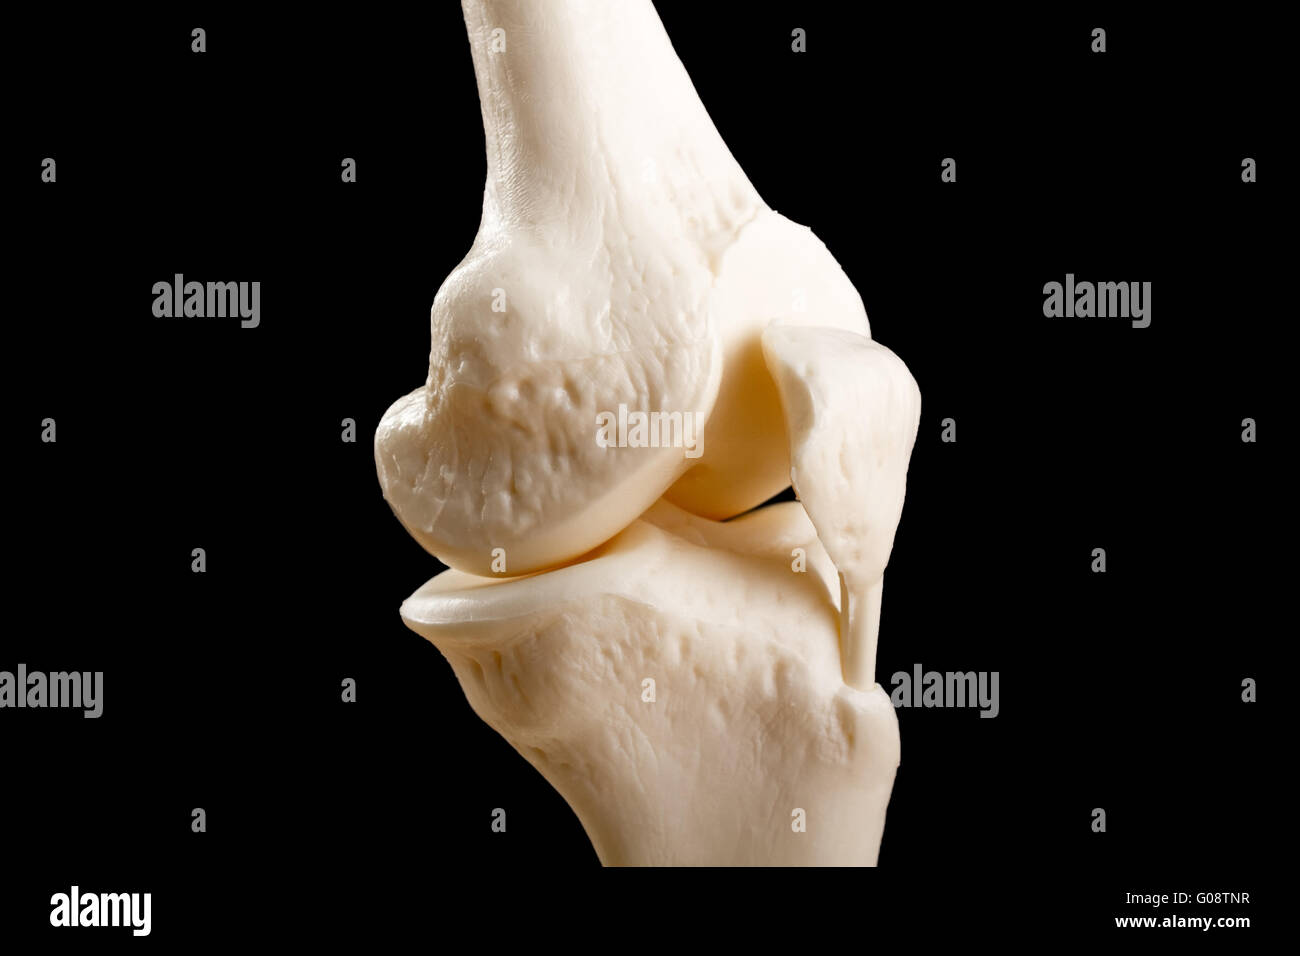 Anatomia dell'articolazione del ginocchio umano Foto Stock